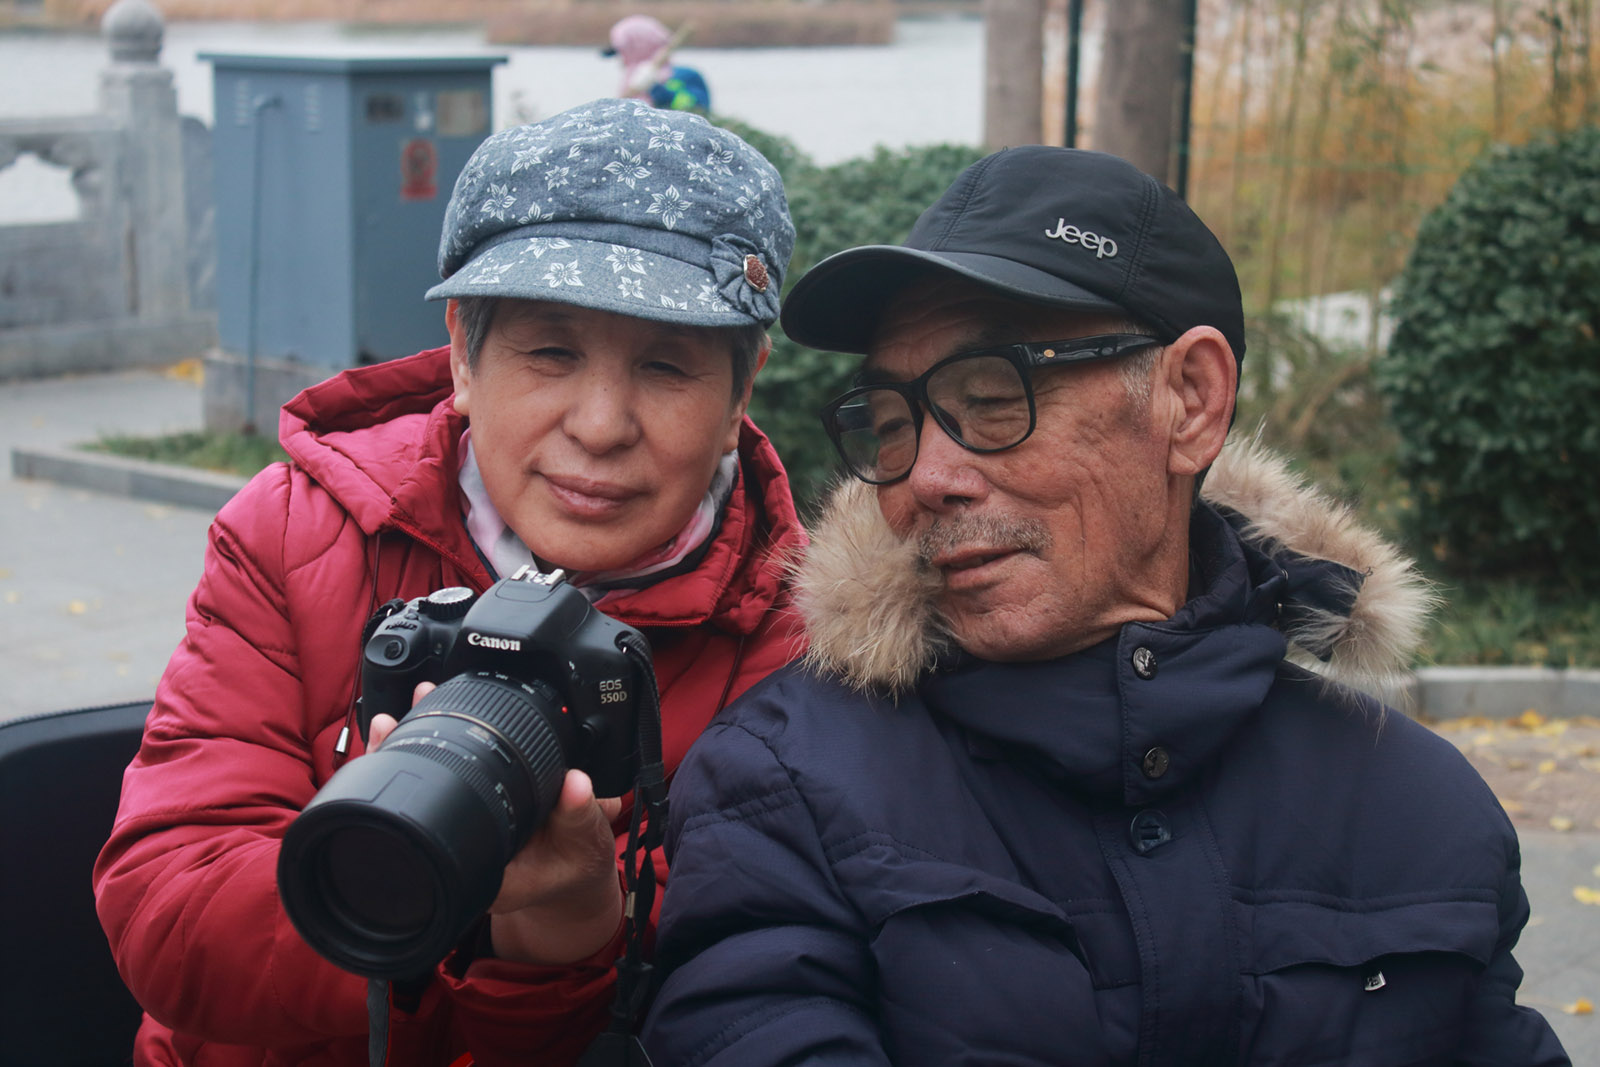 馮嘉宸(小學組)北京《欣賞》 爺爺奶奶是攝影愛好者，他們每次拍完照片都會拿給對方品評欣賞，彼此鼓勵。媽媽說，幸福家庭，無非就這兩個原則：一是“努力使自己被對方欣賞”，二是“努力去欣賞對方”。欣賞是花，幸福是果，相互欣賞，此生相伴！搜索復制